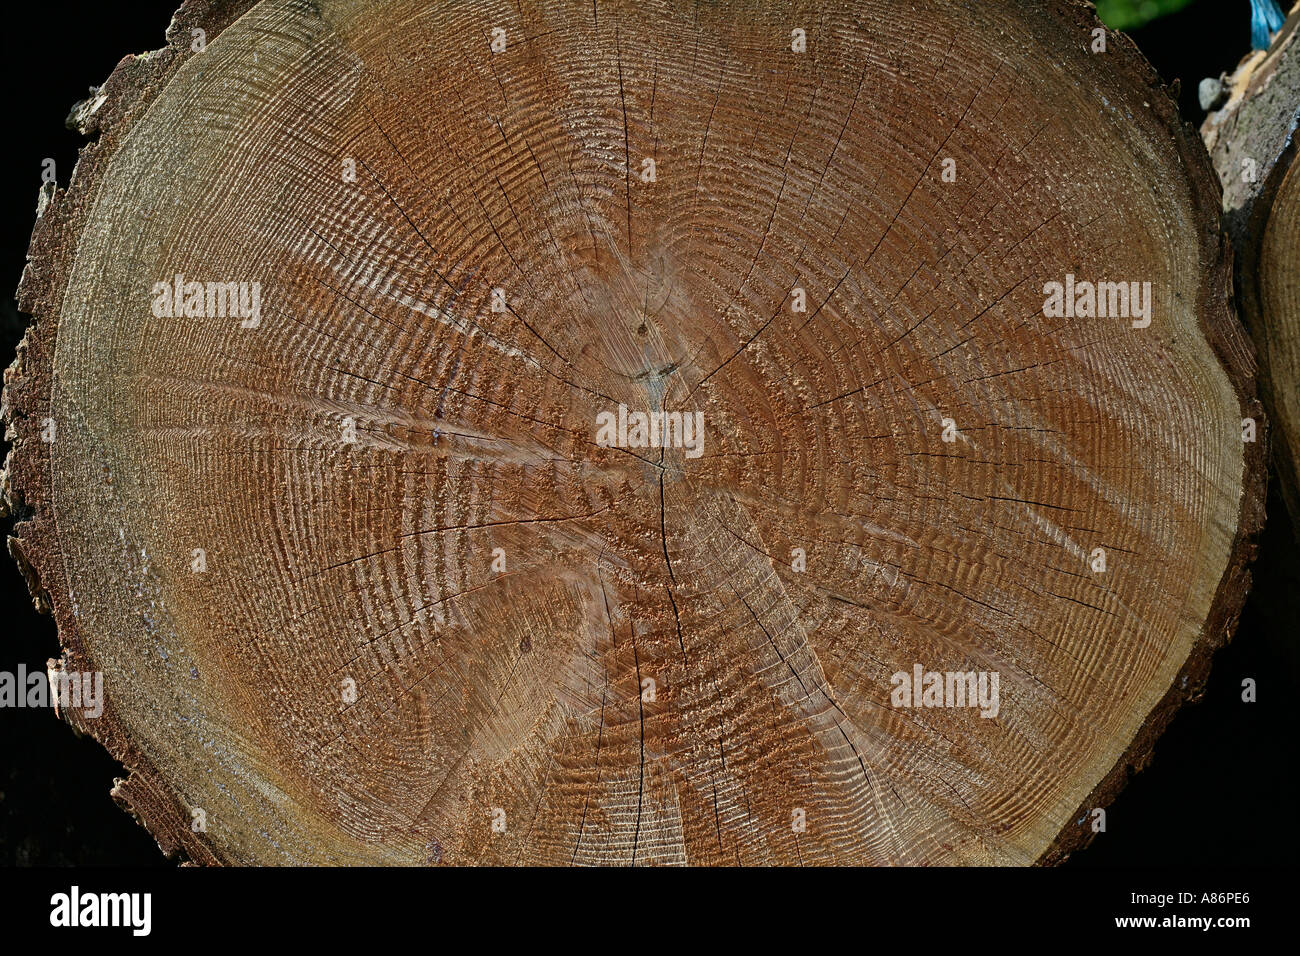 Los anillos de los árboles que representan la edad de crecimiento anual Foto de stock